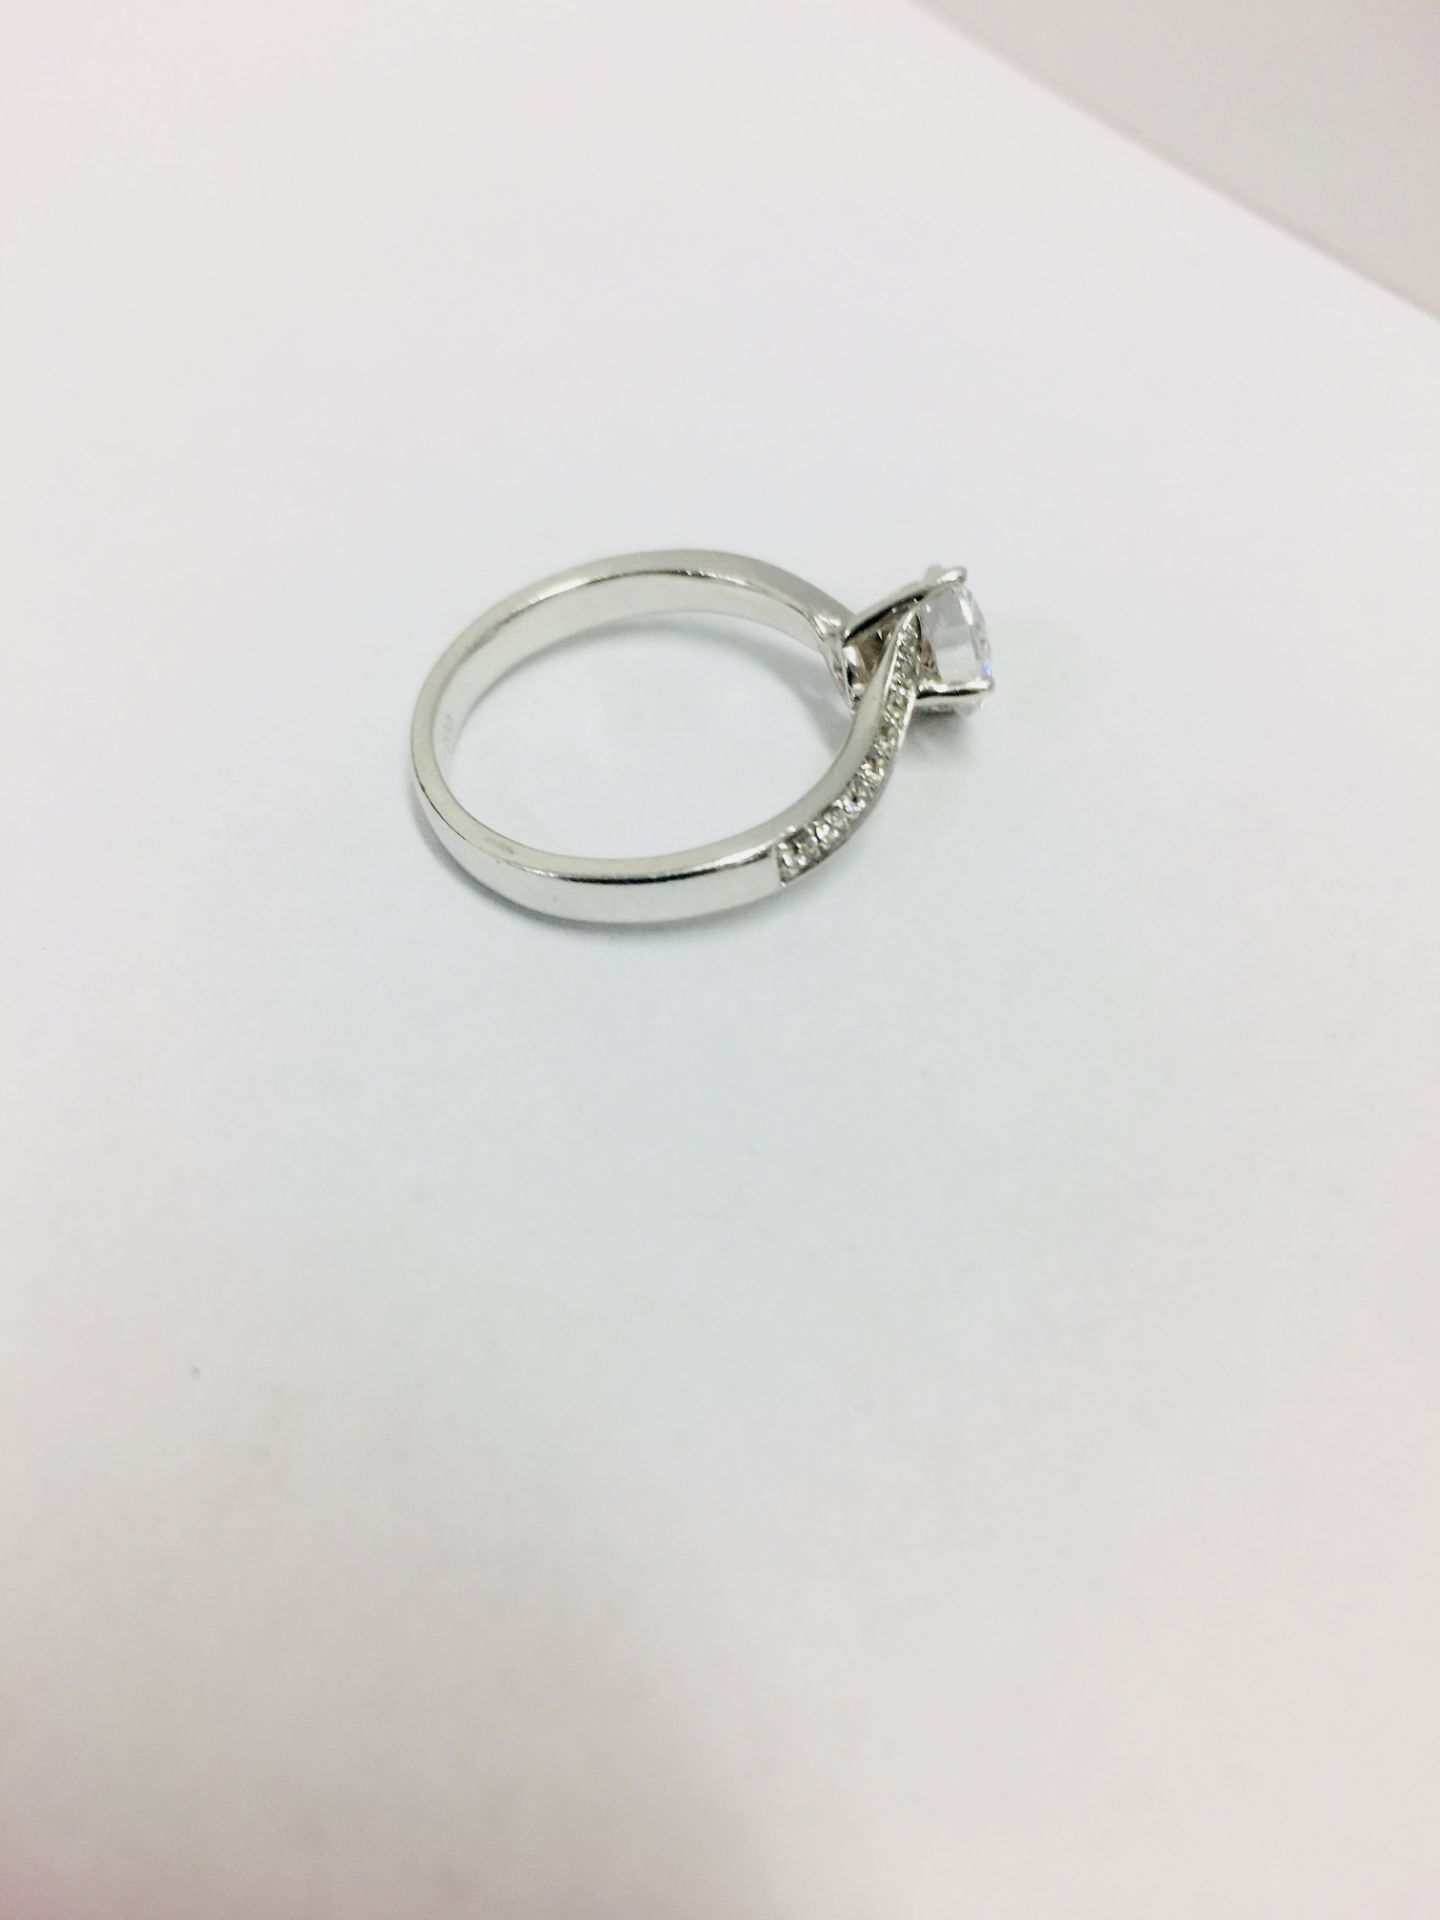 Platinum twist diamond solitaire ring,0.50ct brilliant cut diamond,h colour vs clarity - Bild 3 aus 6